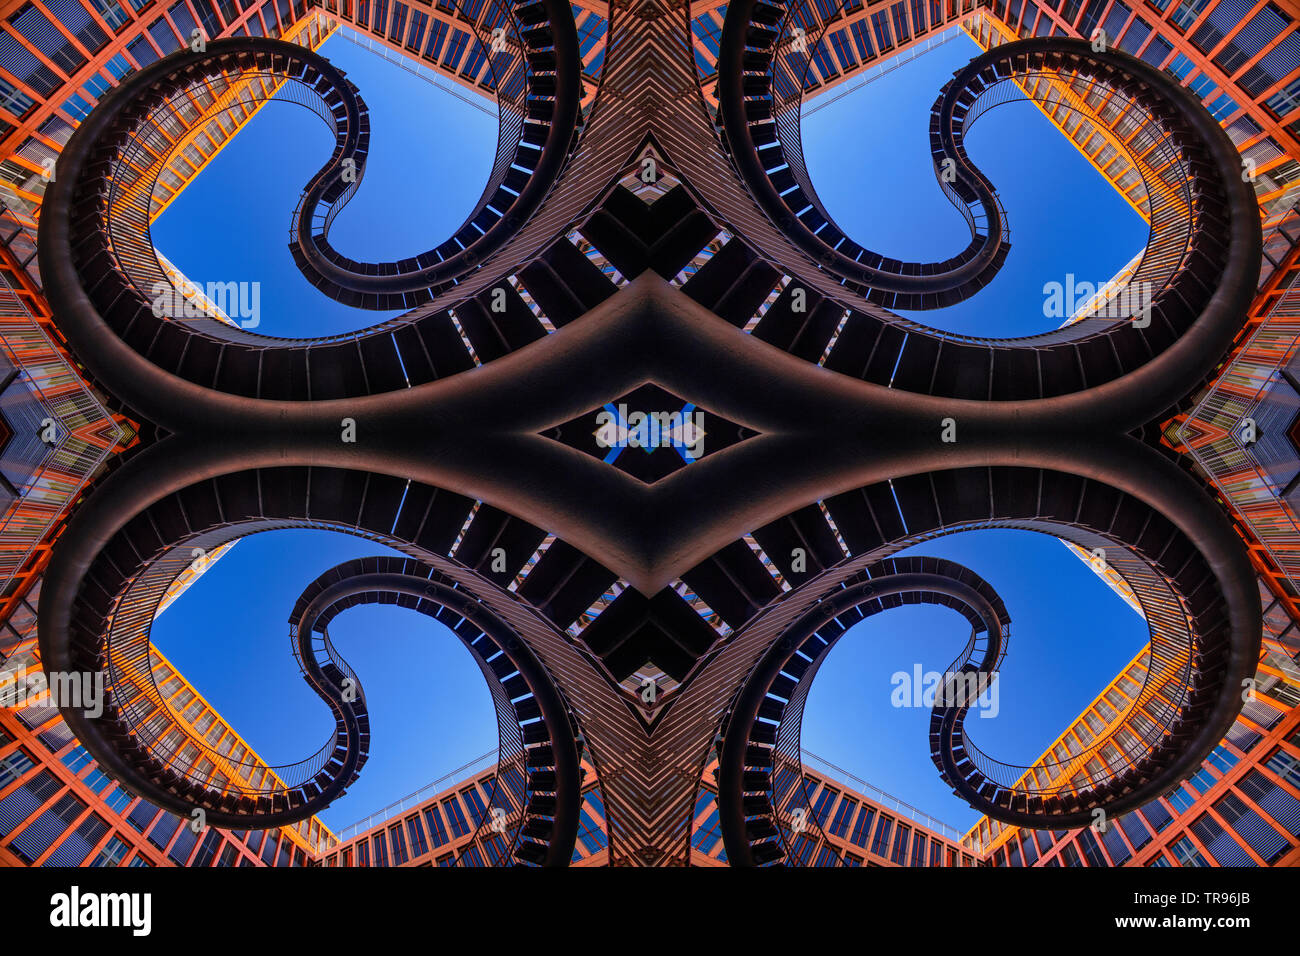 Germany, Bavaria, Munich, quatre partie composite de l'escalier sans fin ou infinie sculpture de l'artiste Olafur Eliasson avec les bureaux de la KPMG derrière.. Banque D'Images